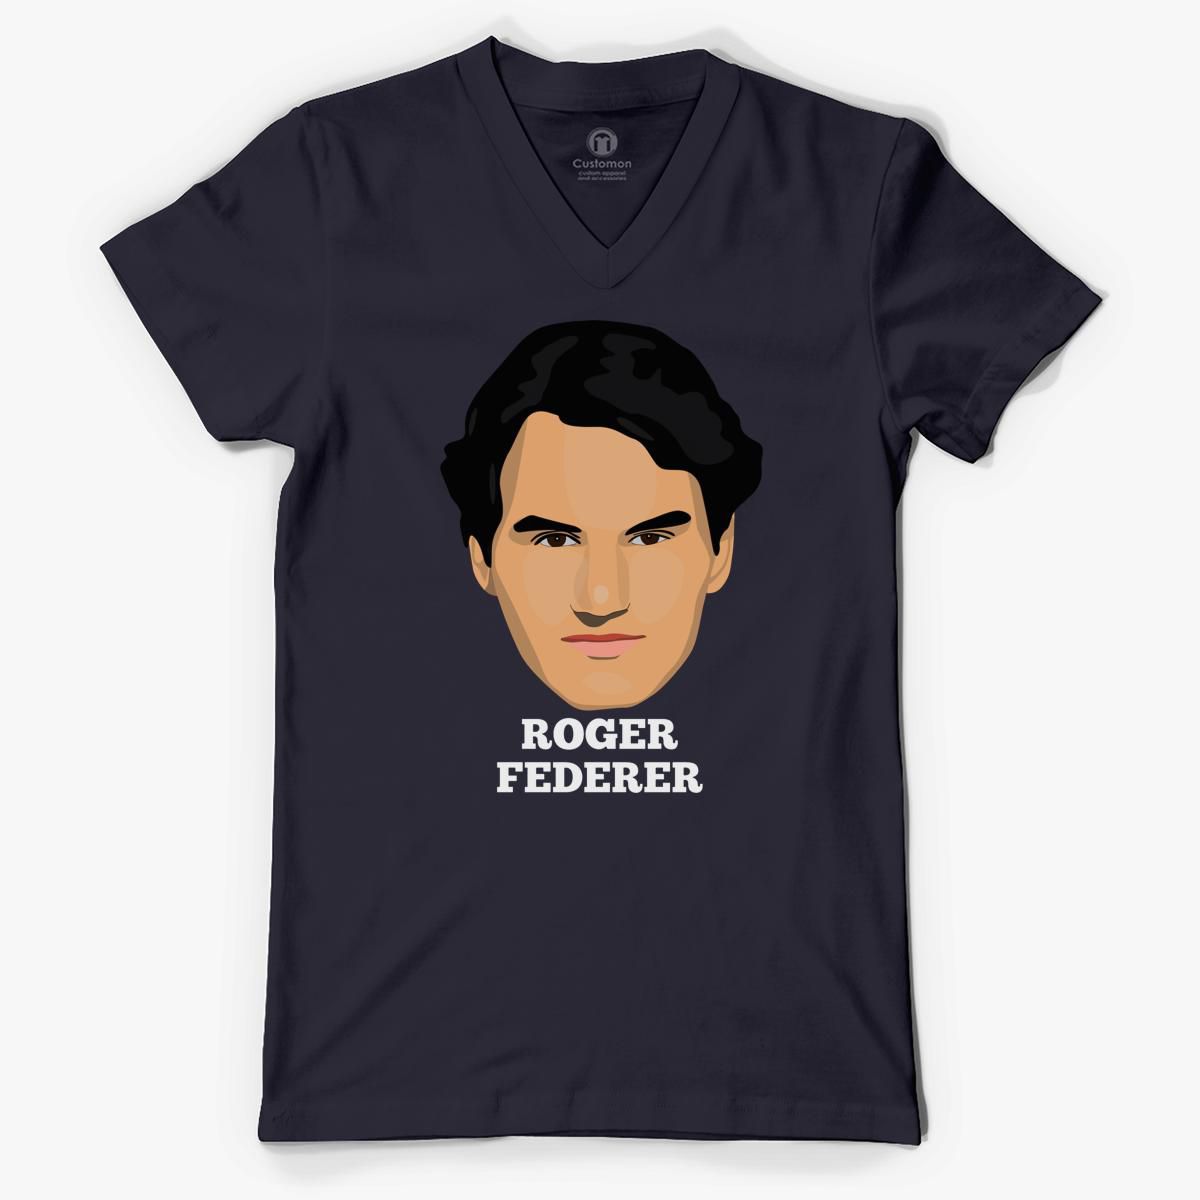 Roger Federer Mini Face Art Design Tee V-Neck T-shirt - Customon